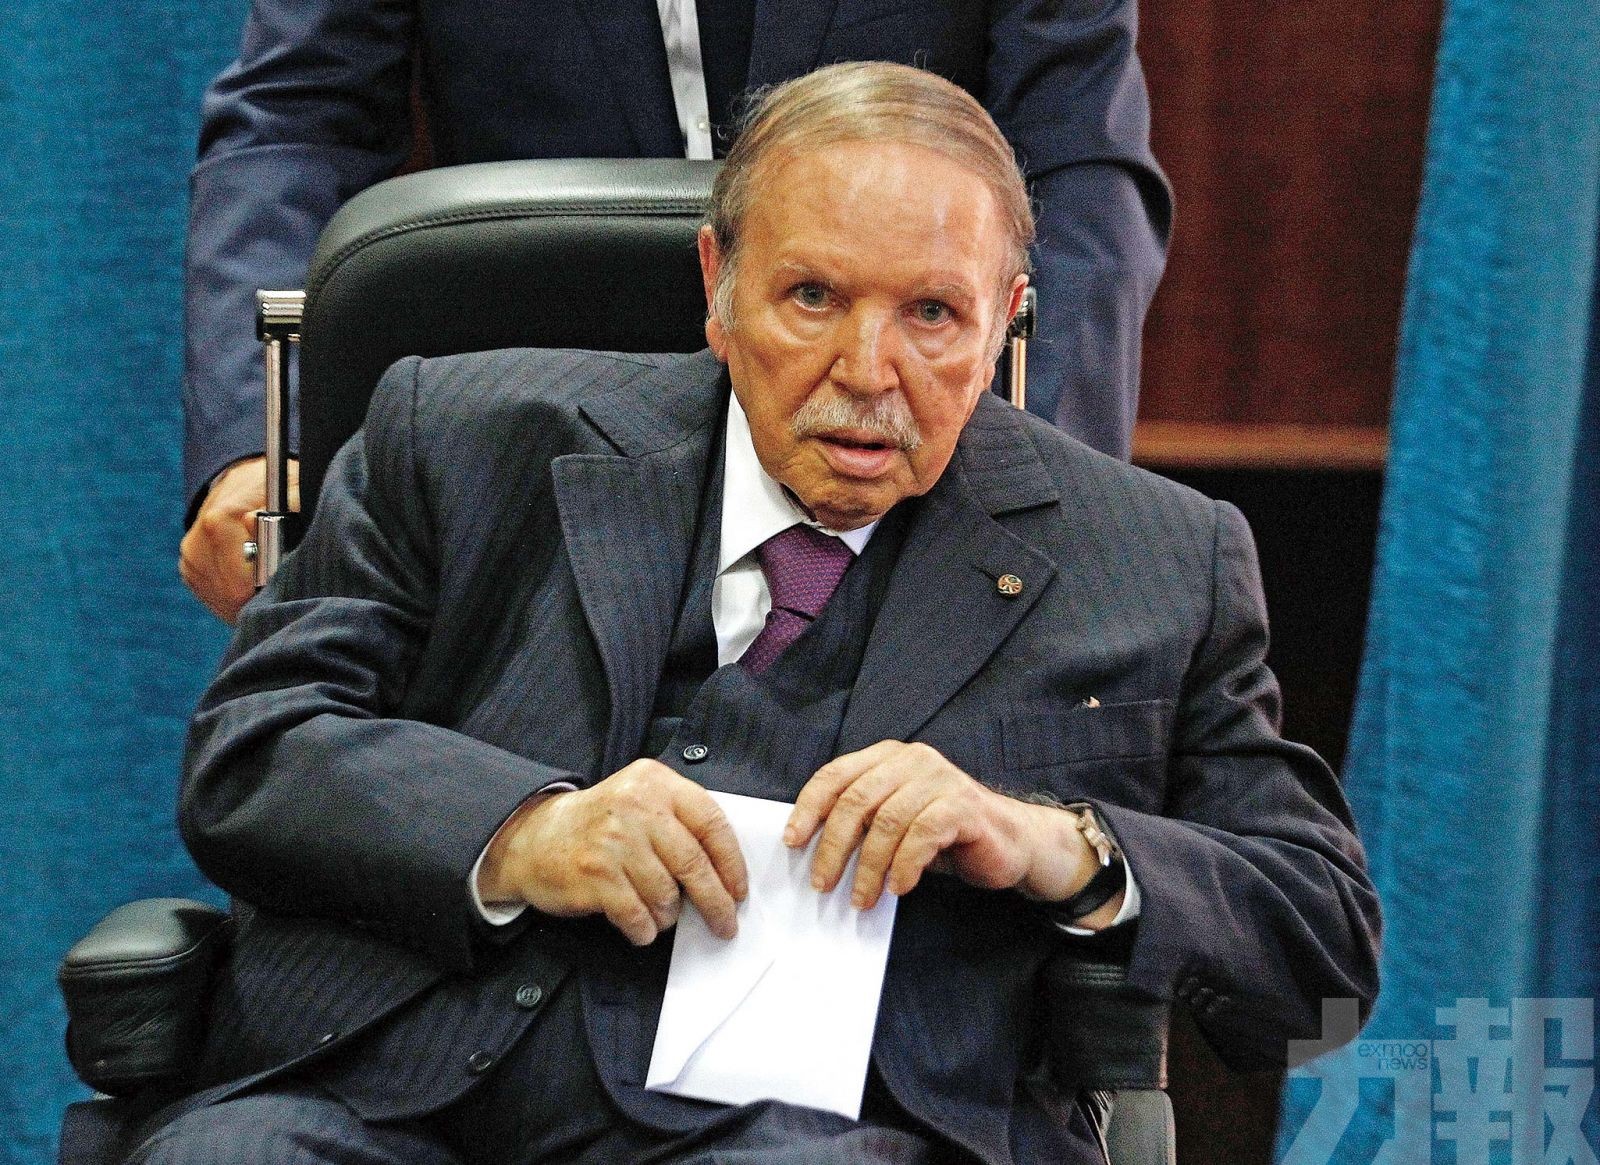 阿爾及利亞總統辭職下台